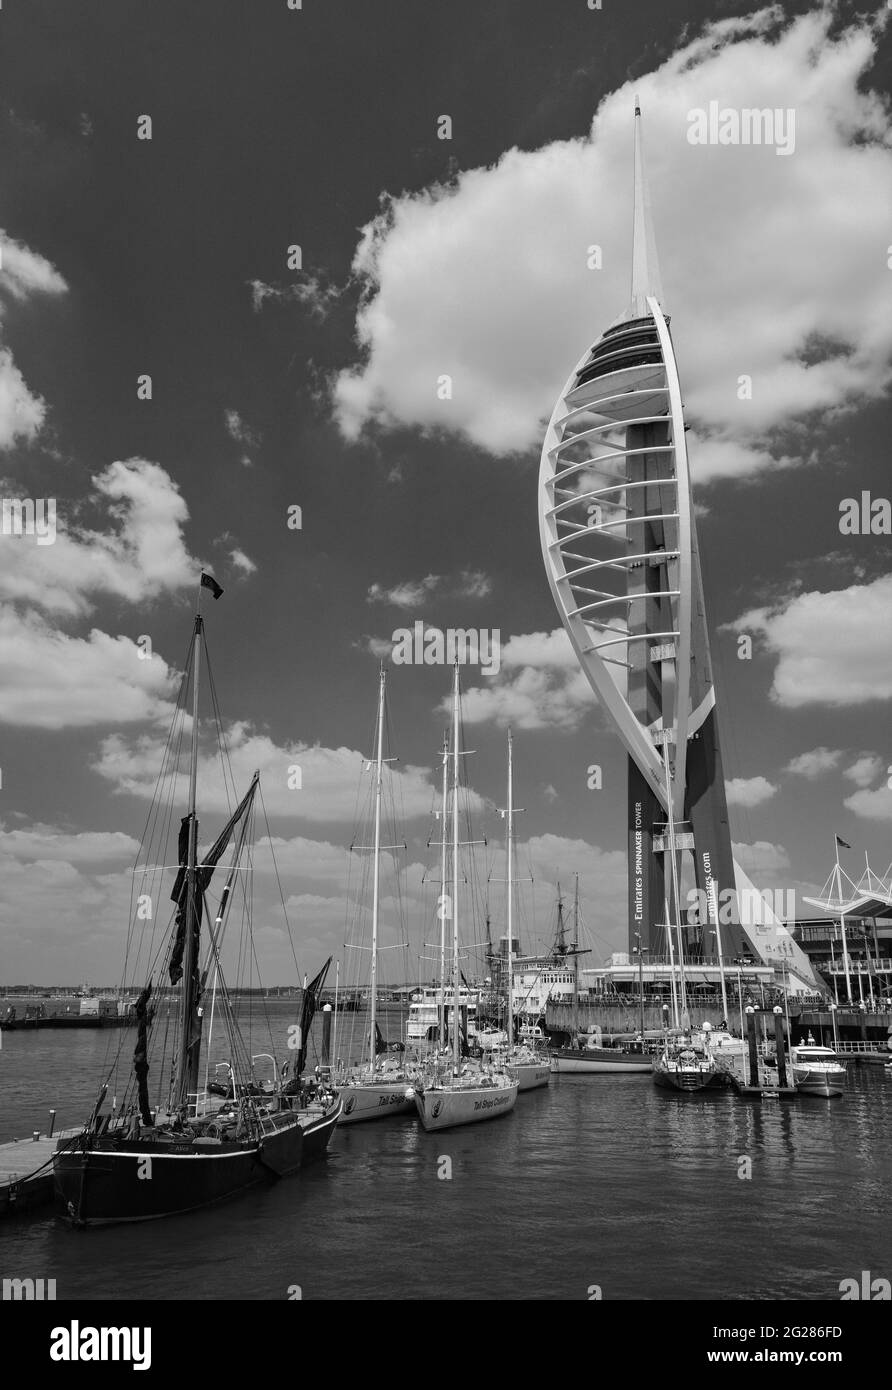 Ciel d'été au-dessus de la tour Spinnaker, Gunwharf Quays, Portsmouth, Royaume-Uni Banque D'Images